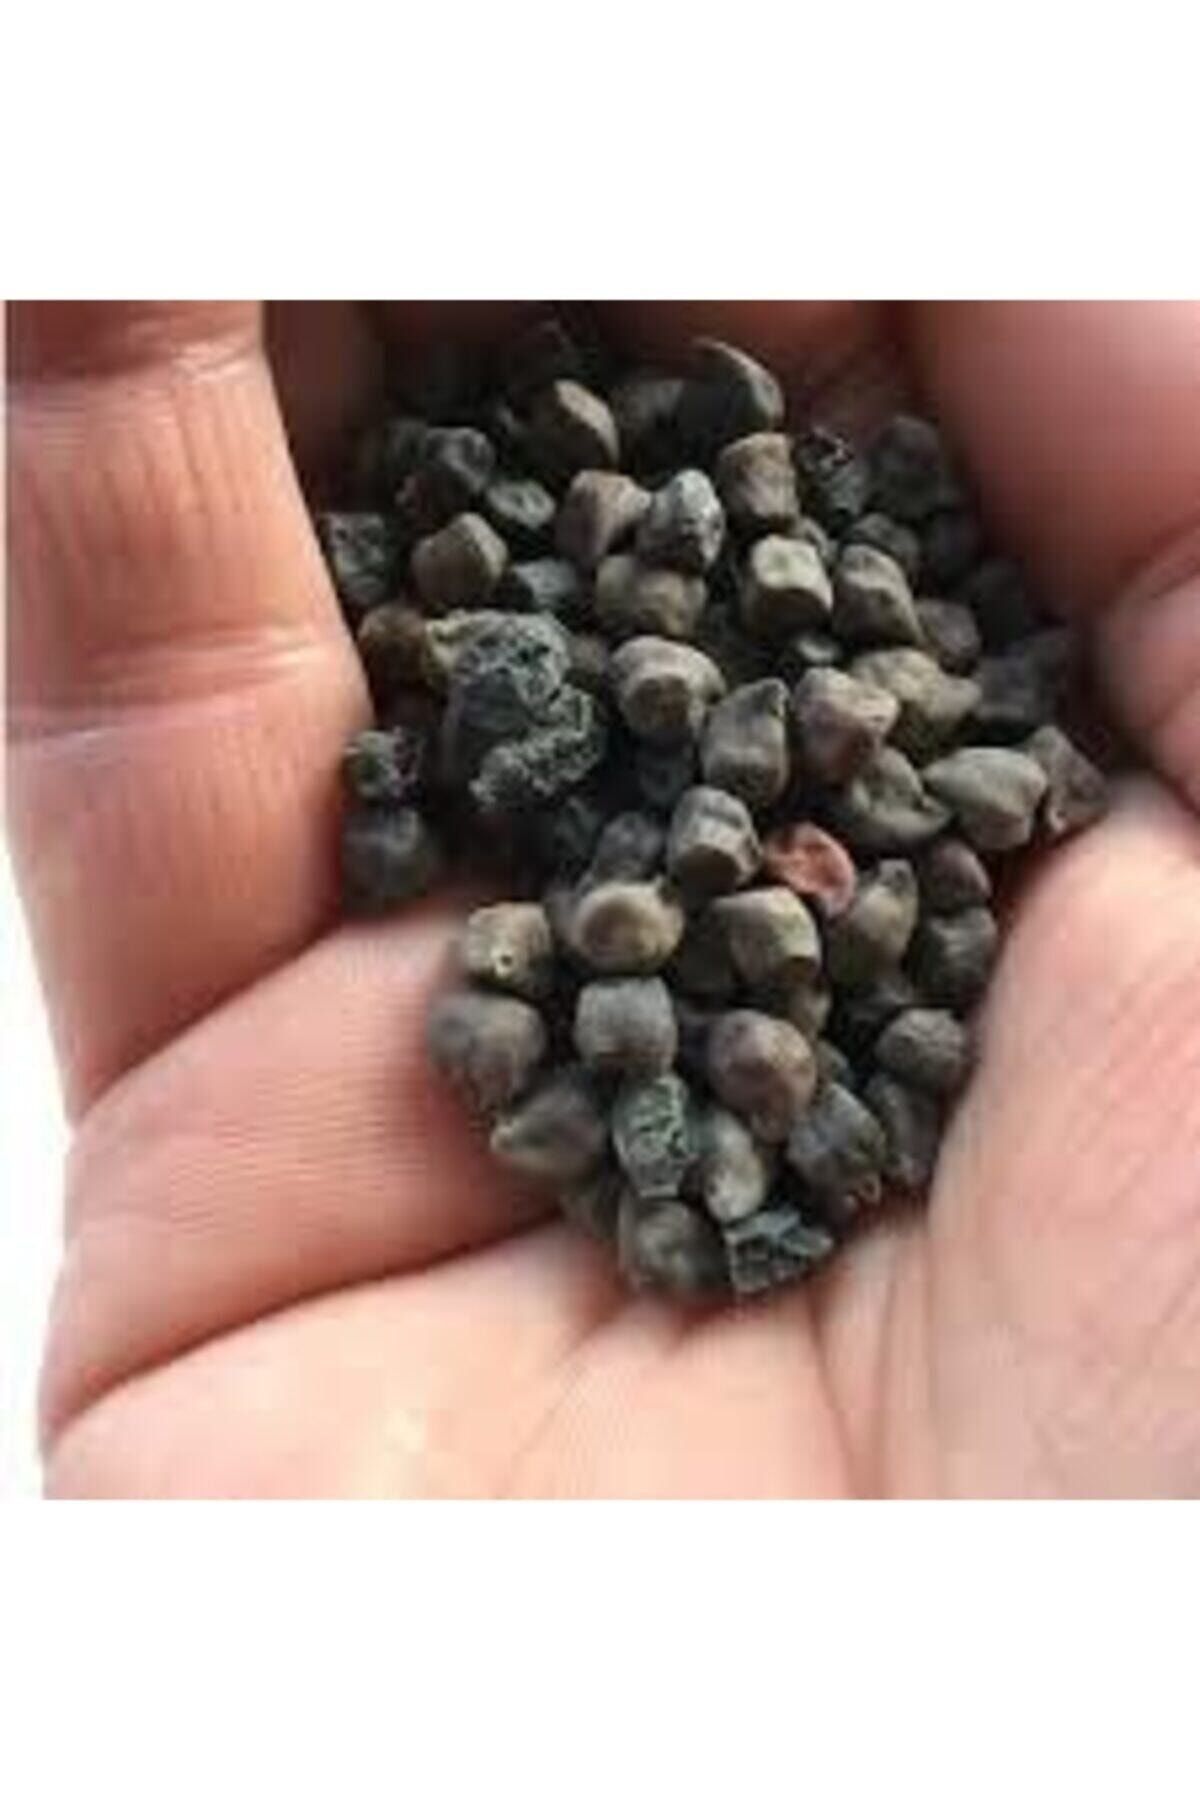 Köy Tohumları 20 Adet Tohum Çok Nadir Bulunan Siyah Nohut Tohumu Faydası Saymakla Bitmez Kara Nohut Sürpriz Hediy